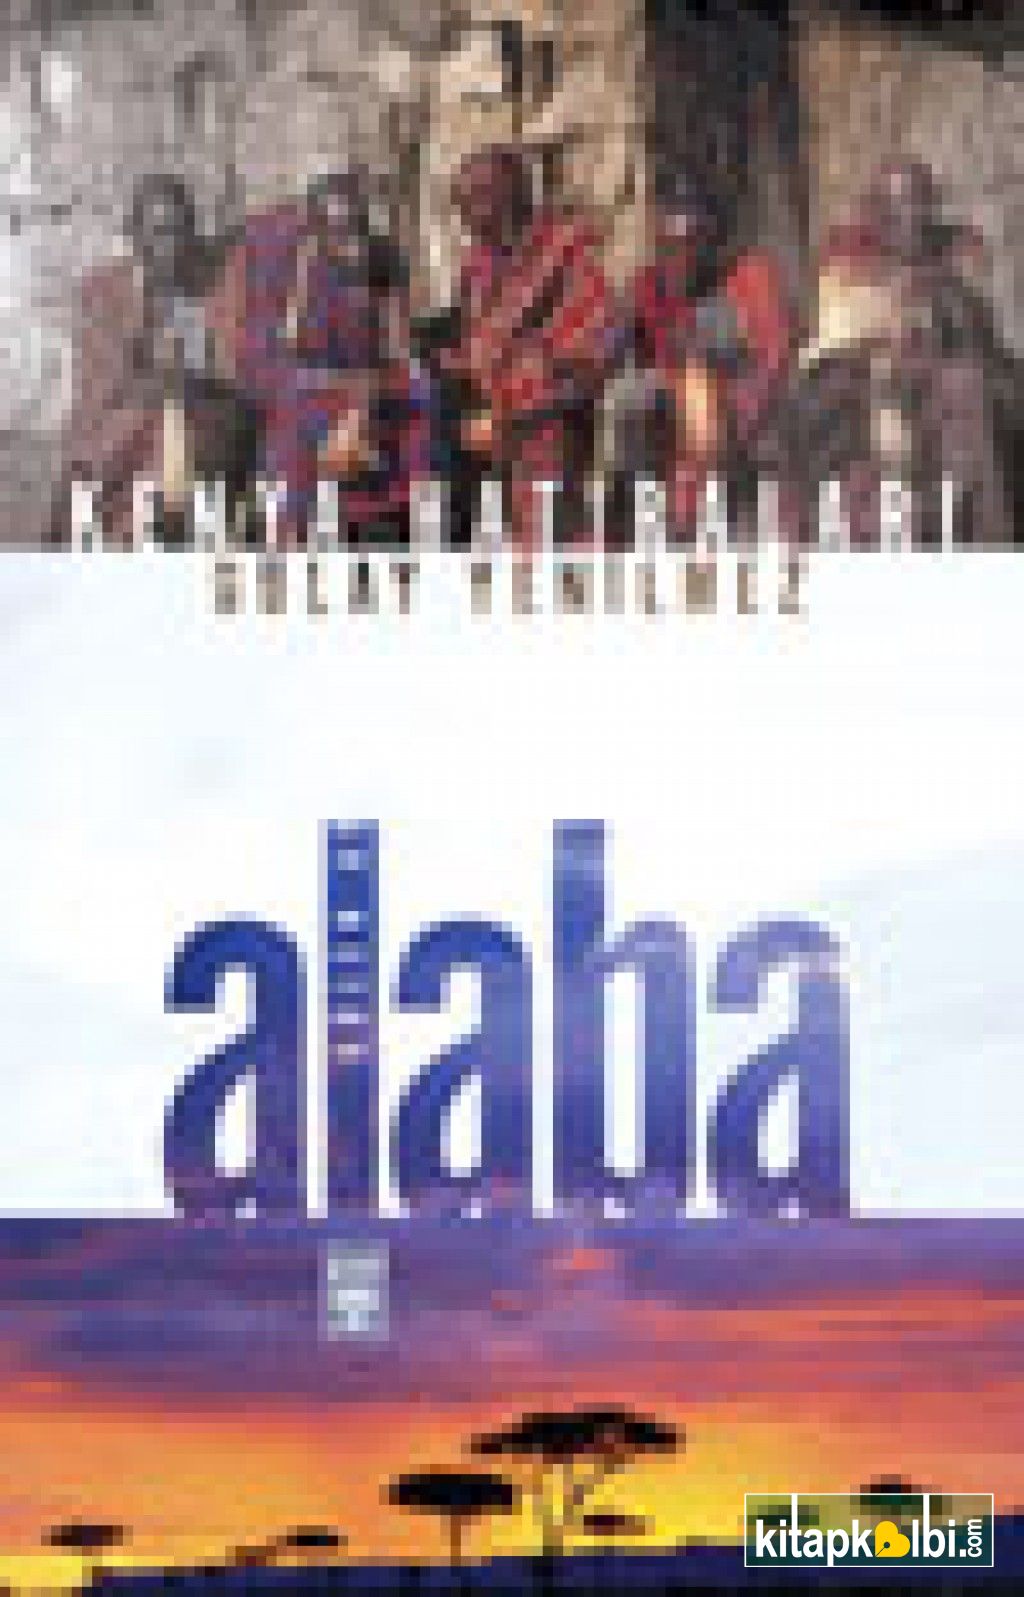 Alaba